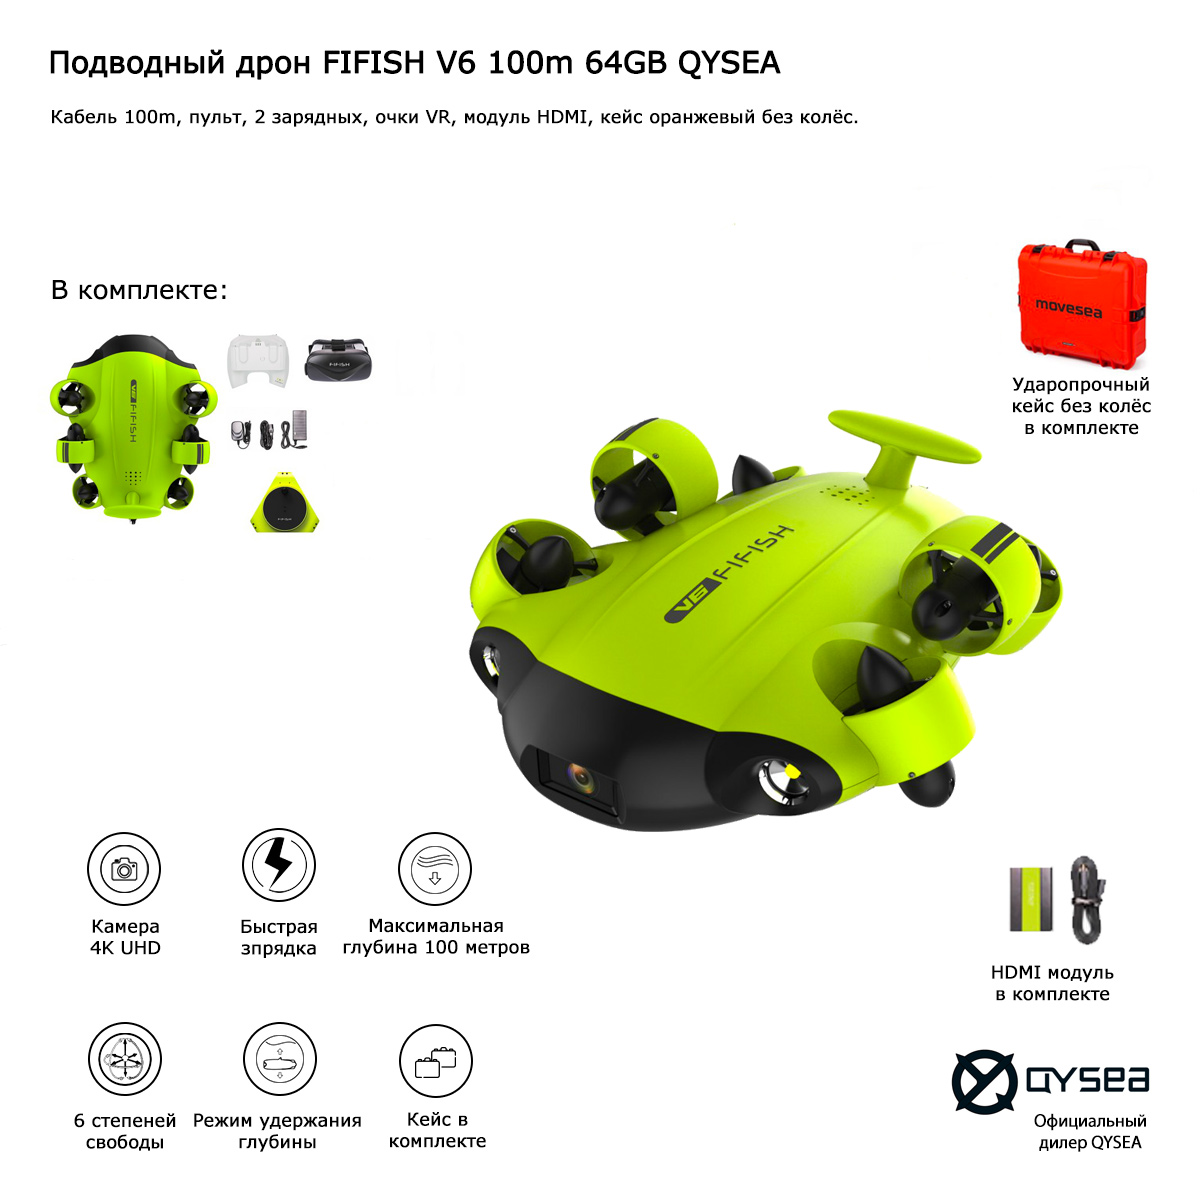 Подводный дрон FIFISH V6 100m 64GB QYSEA (Арт 847050)